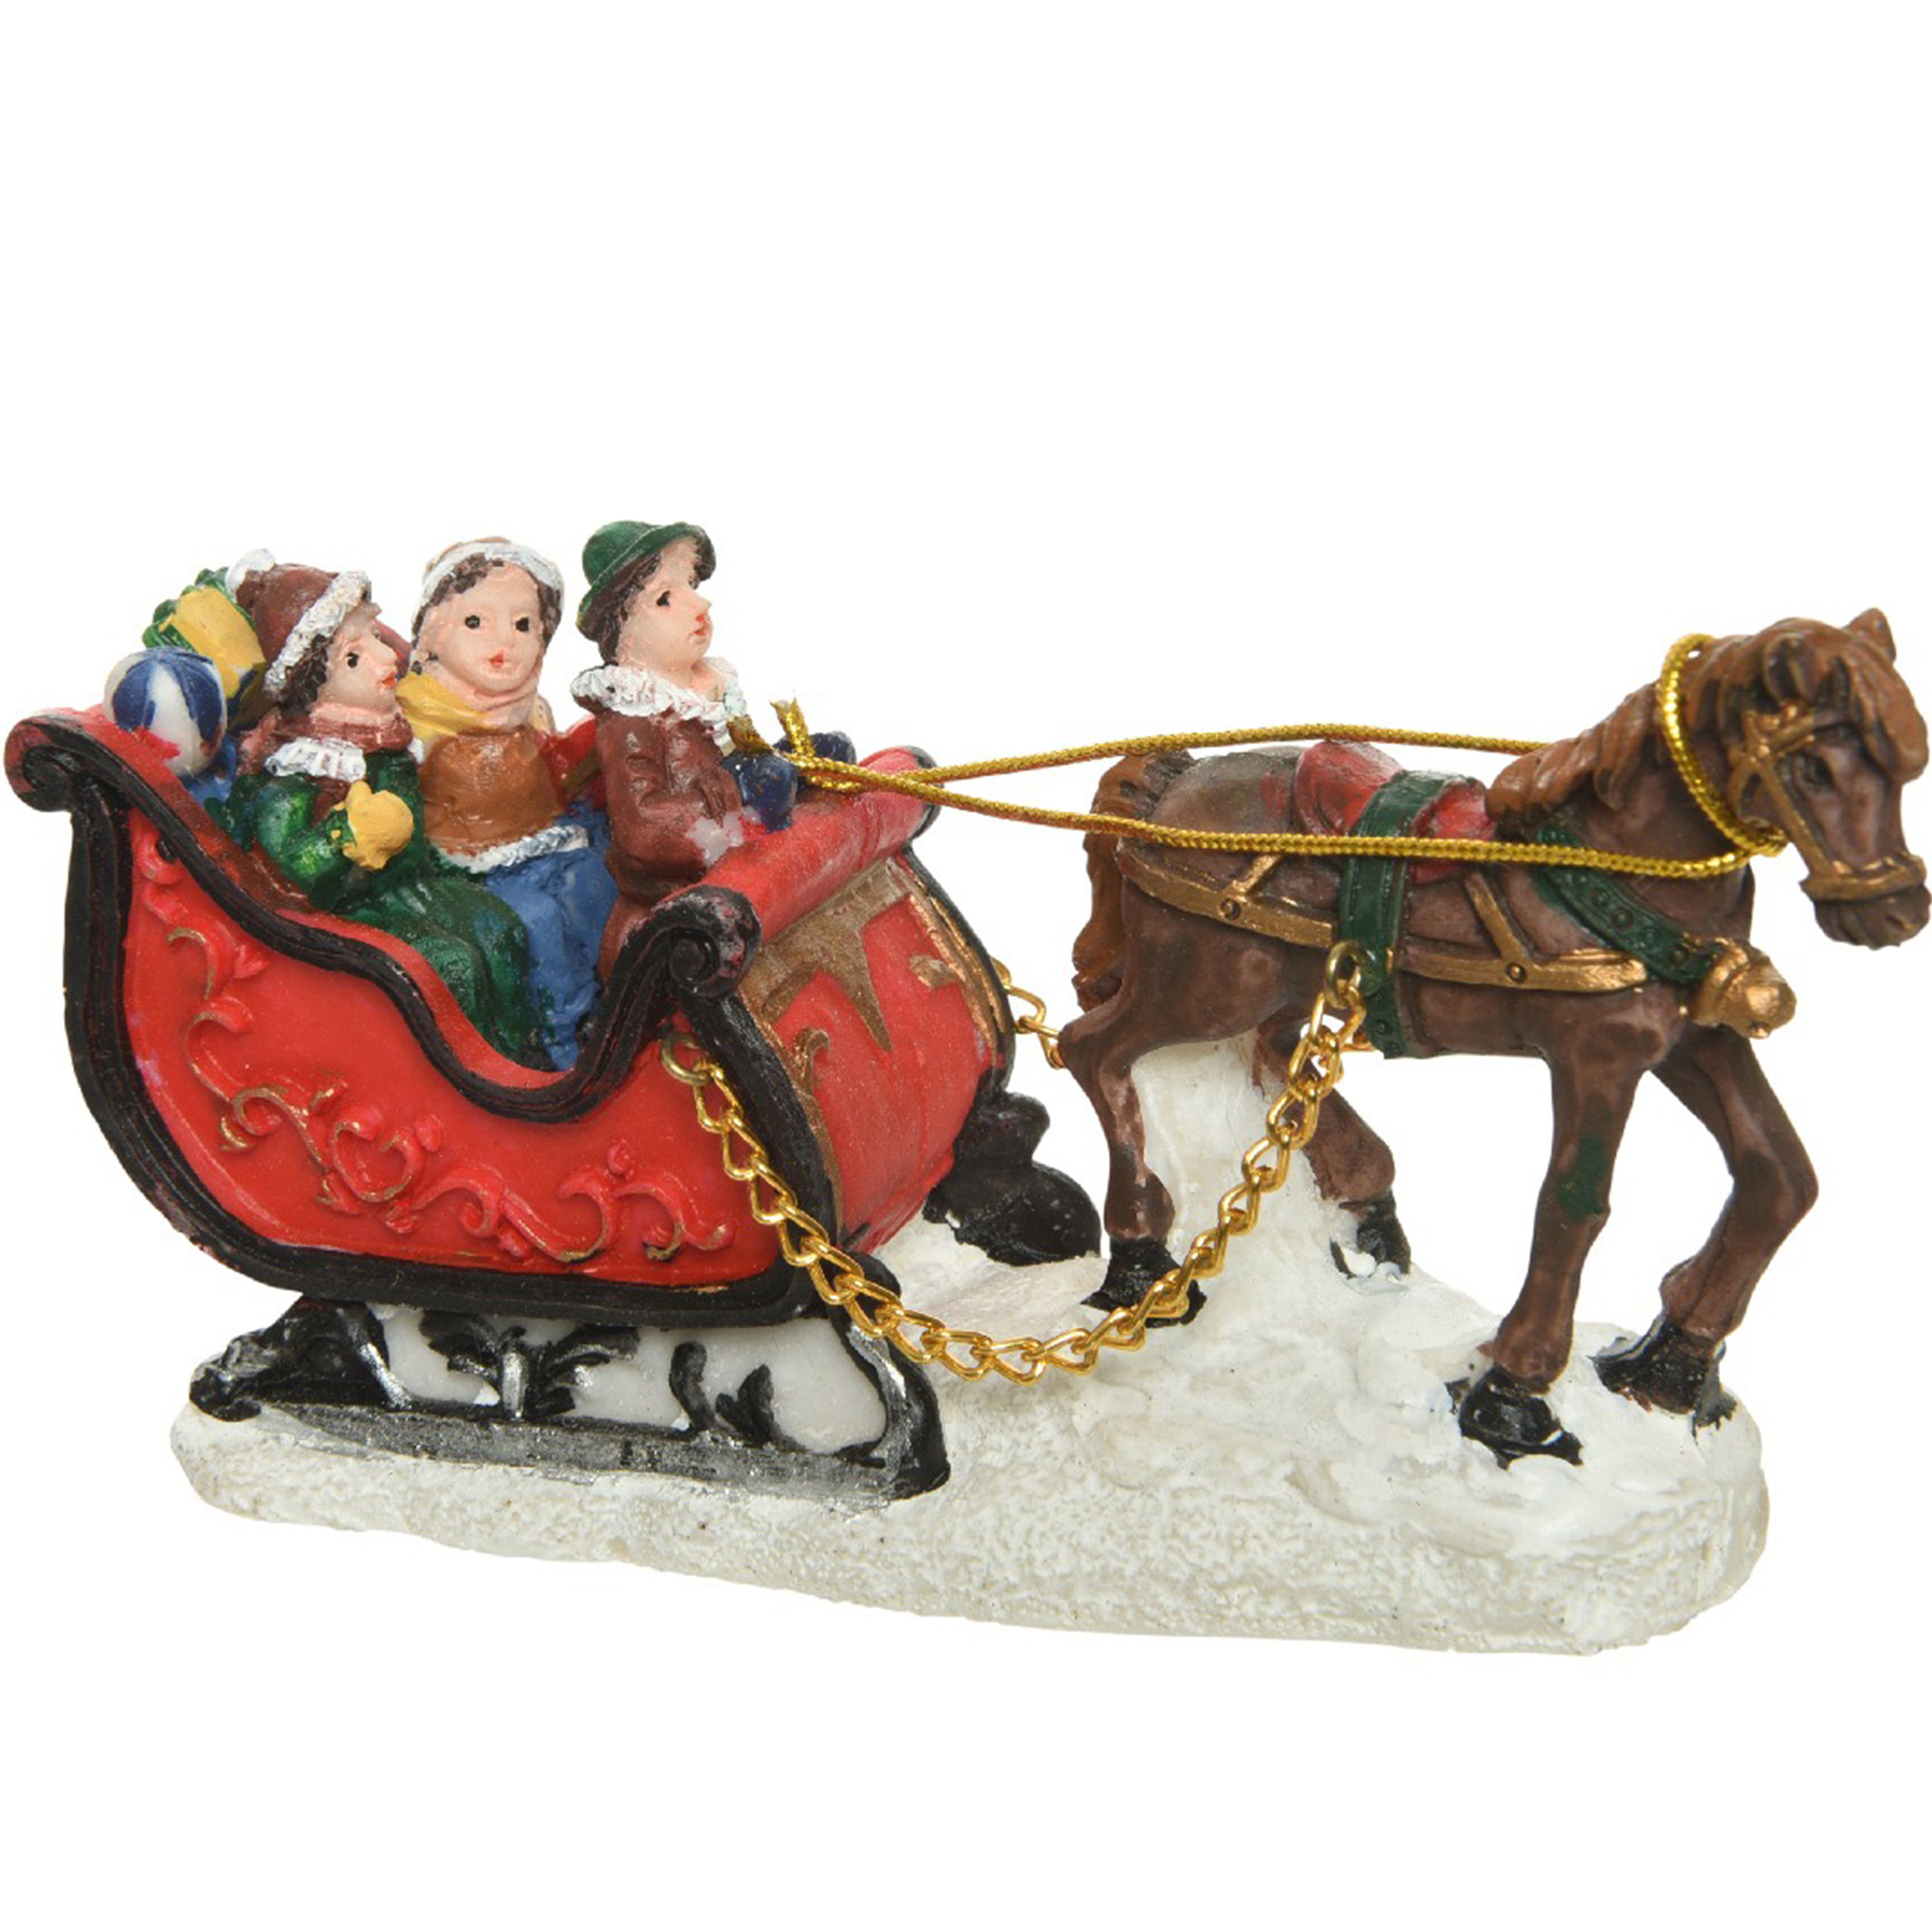 Lumineo Kerstbeeldjes-kerstdorp figuurtjes slee met paard 12 cm